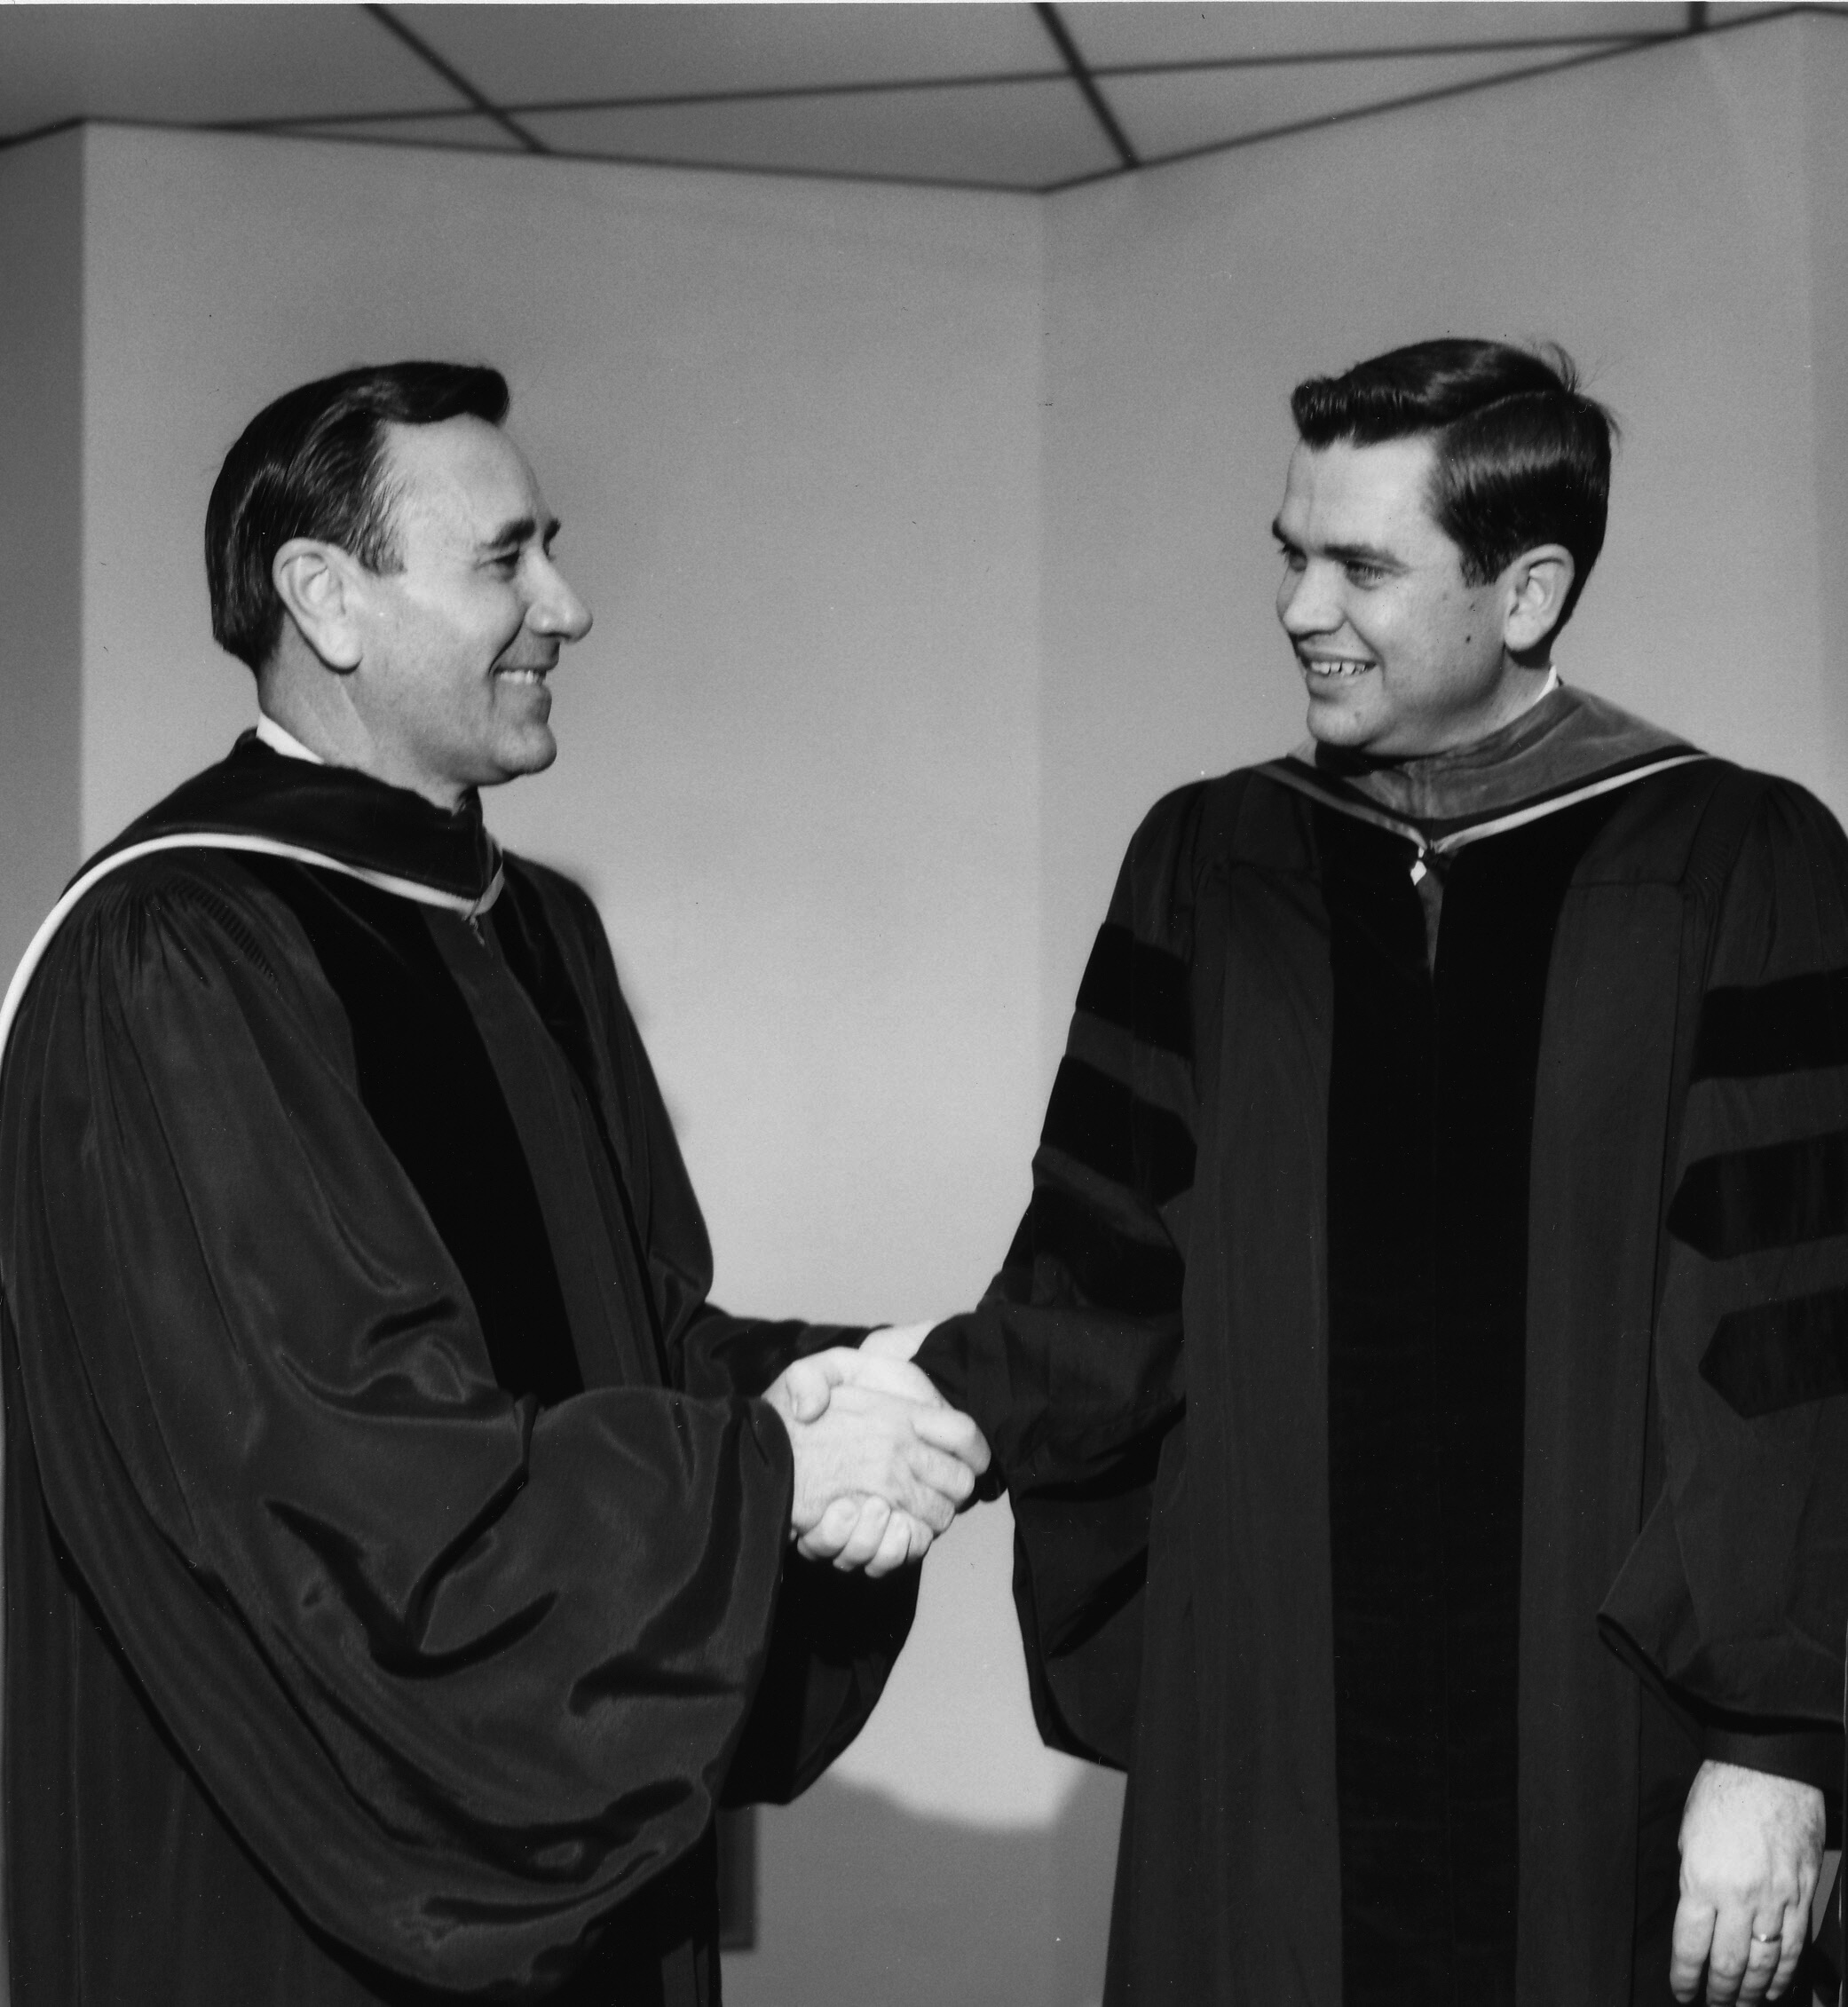 Oral Roberts and Dr. Carl Hamilton